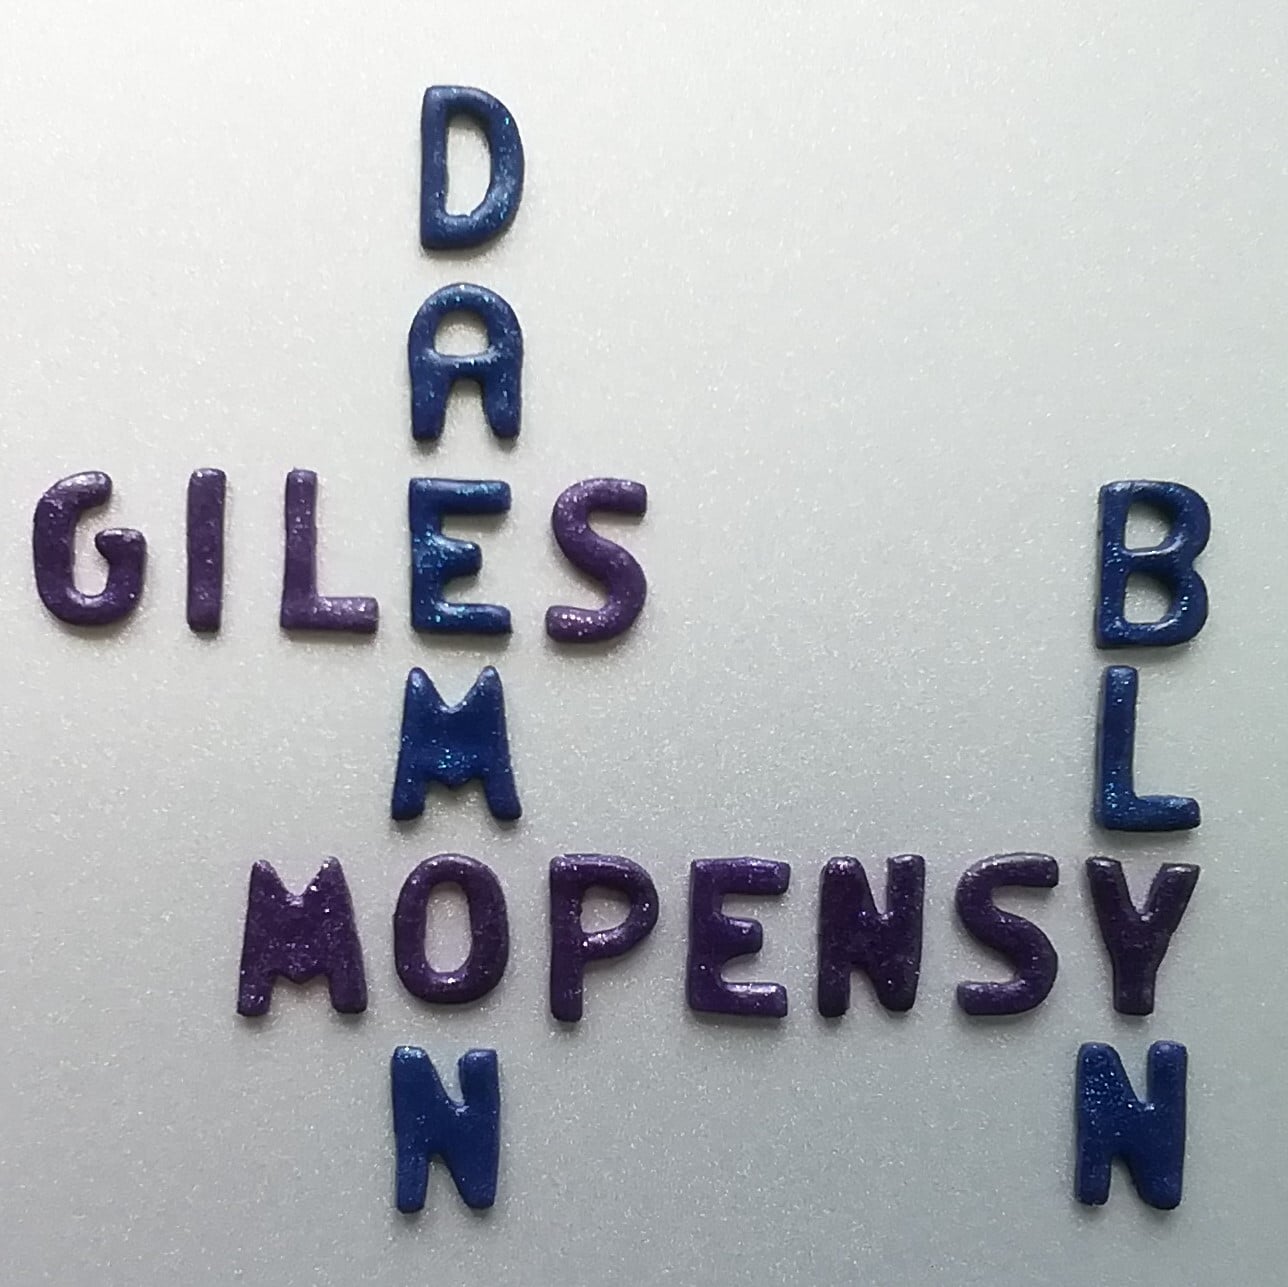 Les mots suivants ont été disposés à la manière du jeu scrabble : Giles, Daemon, Mopensy et Blyn.